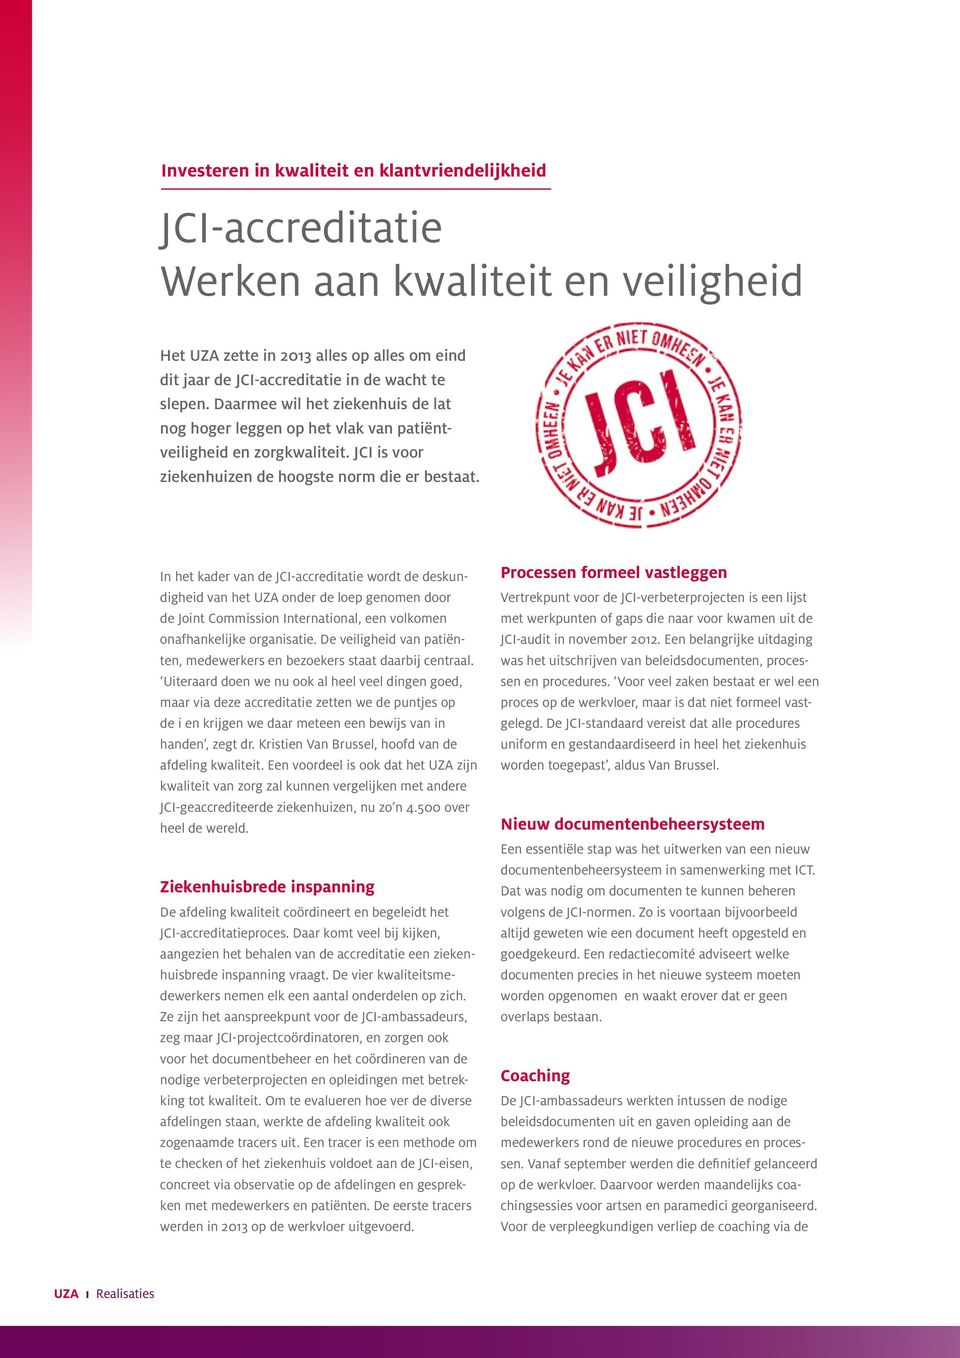 In het kader van de JCI-accreditatie wordt de deskundigheid van het UZA onder de loep genomen door de Joint Commission International, een volkomen onafhankelijke organisatie.